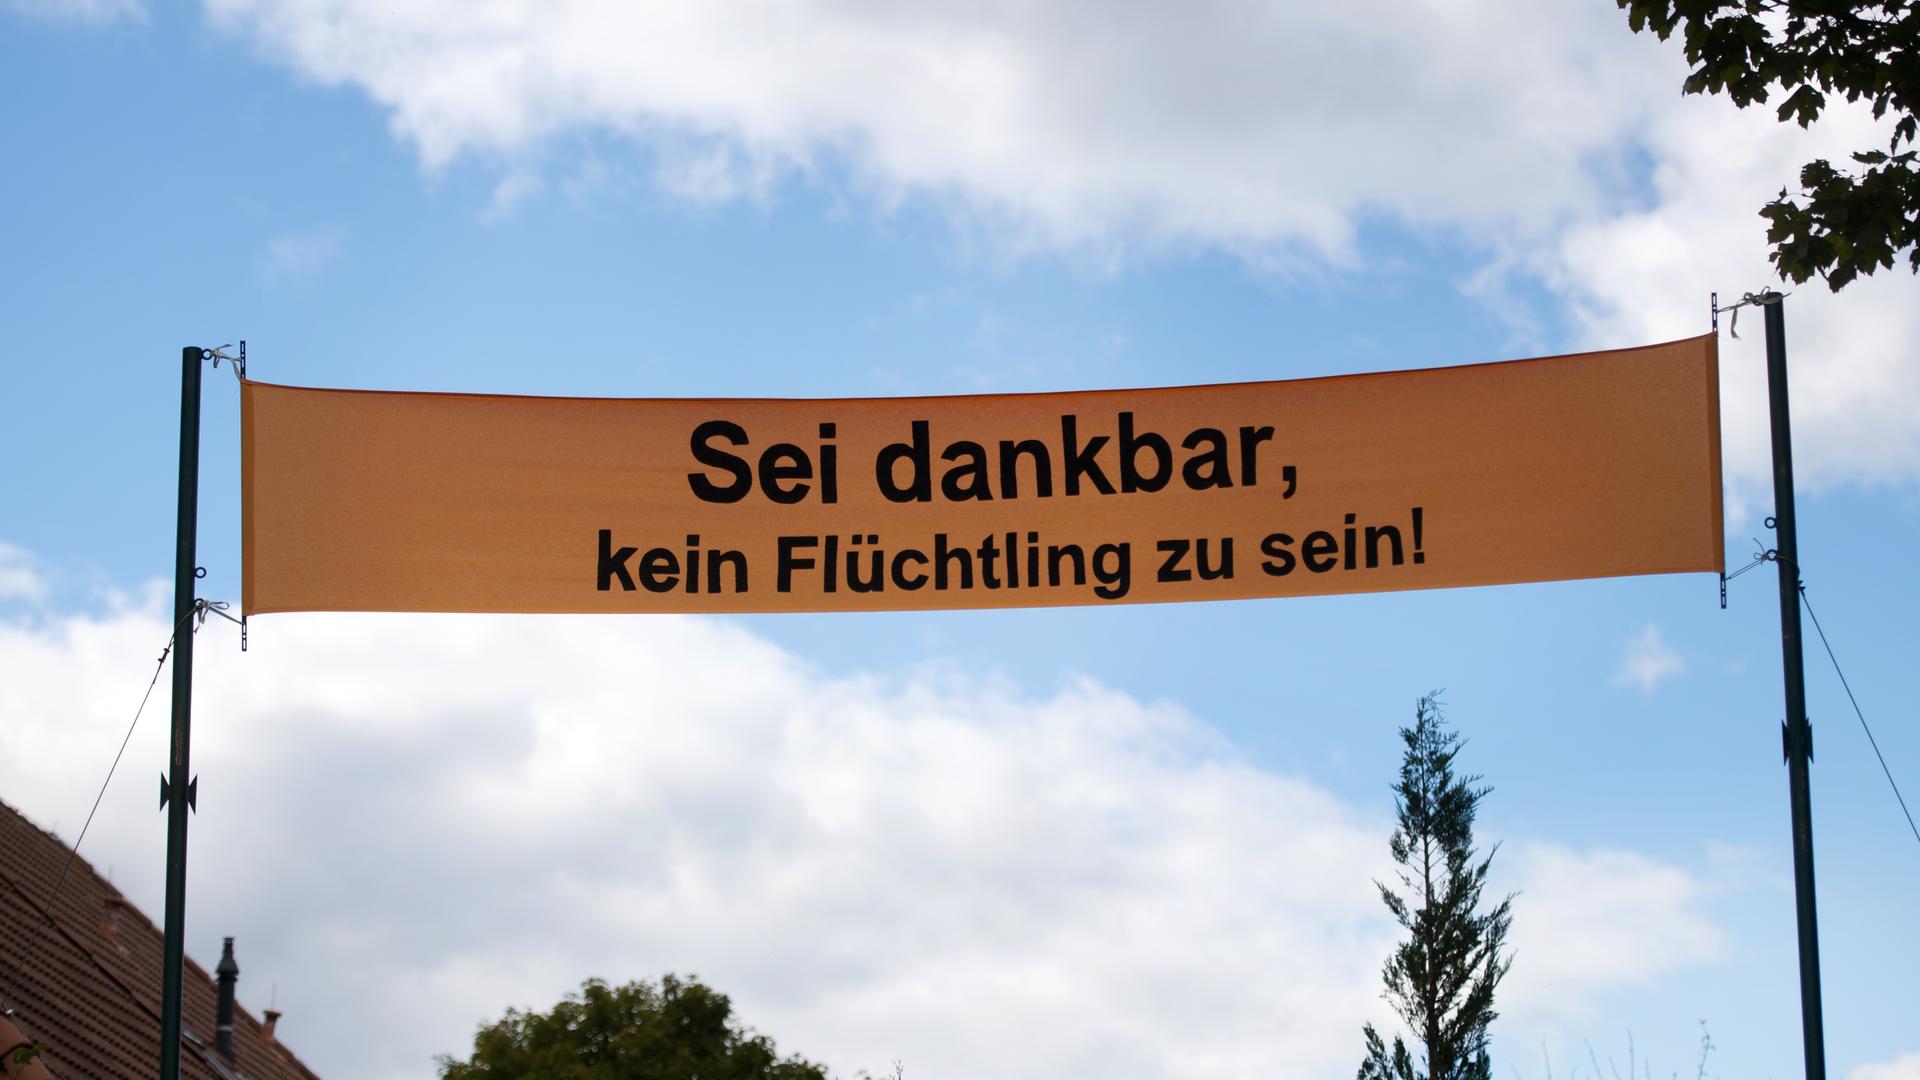 Ein gelbes Banner, auf dem "Sei dankbar, kein Flüchtling zu sein" steht